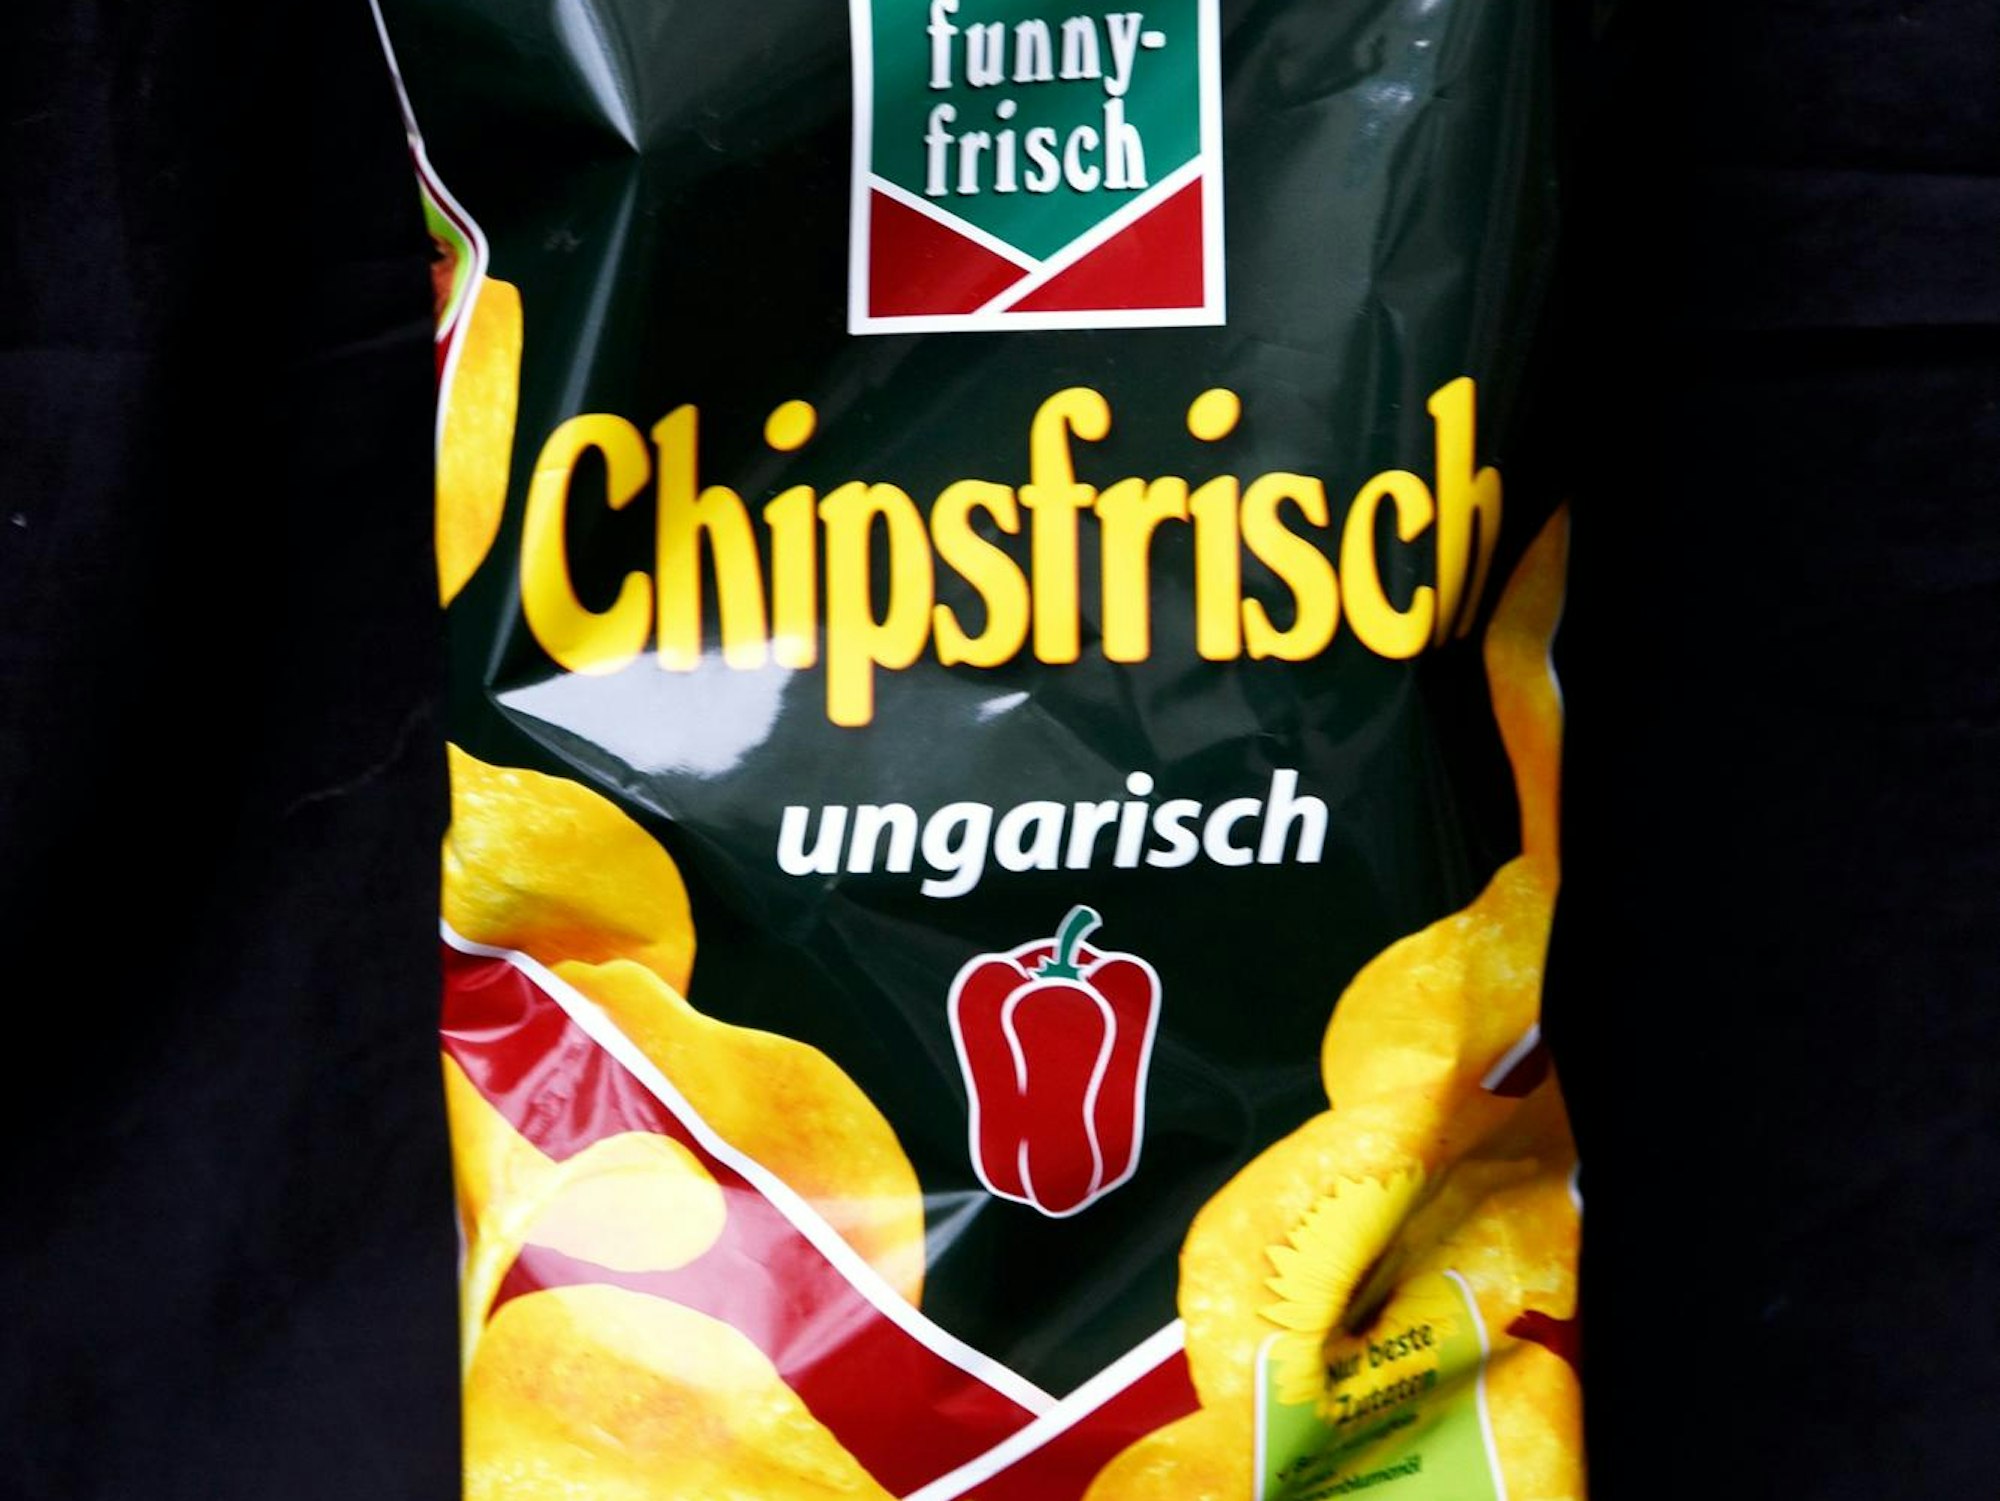 FunnyFrisch Chips